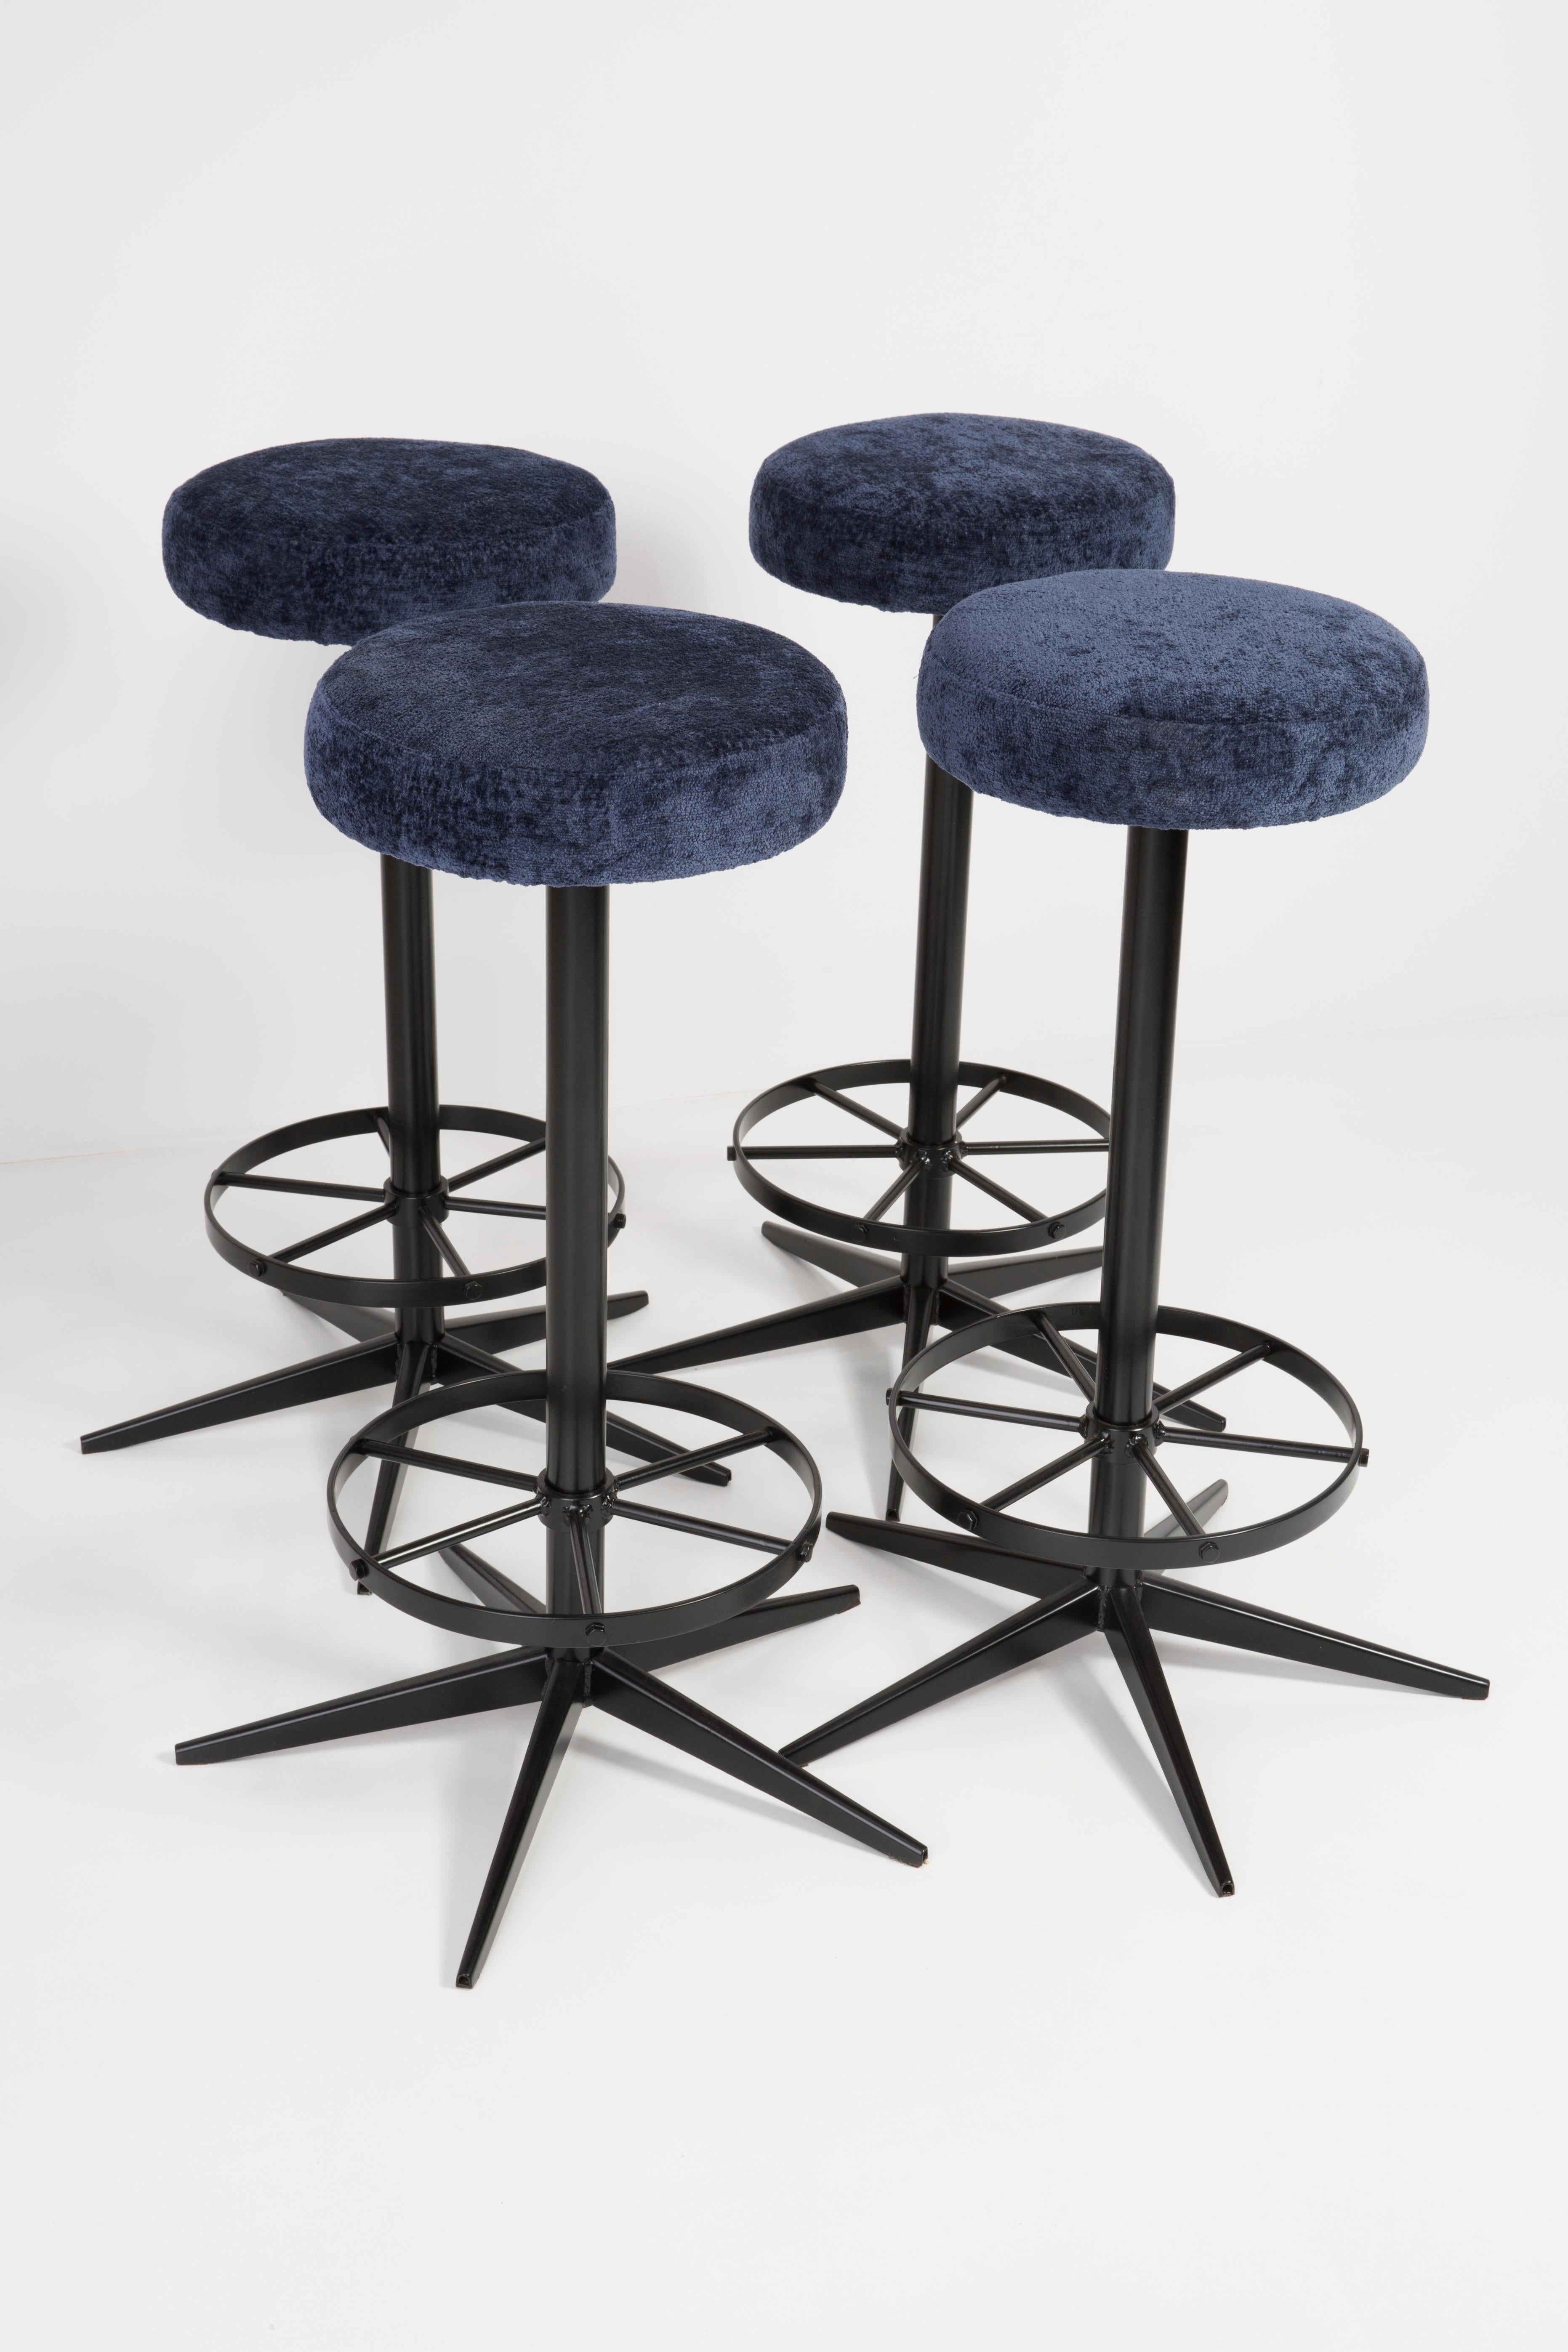 Hocker aus der Zeit um die 1960er Jahre. Produziert in Deutschland Schöne, gut verarbeitete dunkelblaue Polsterung. Der Hocker besteht aus einem gepolsterten Teil, einer Sitzfläche und schwarzen Stahlbeinen. Sie sind nicht reguliert. Die Höhe ist